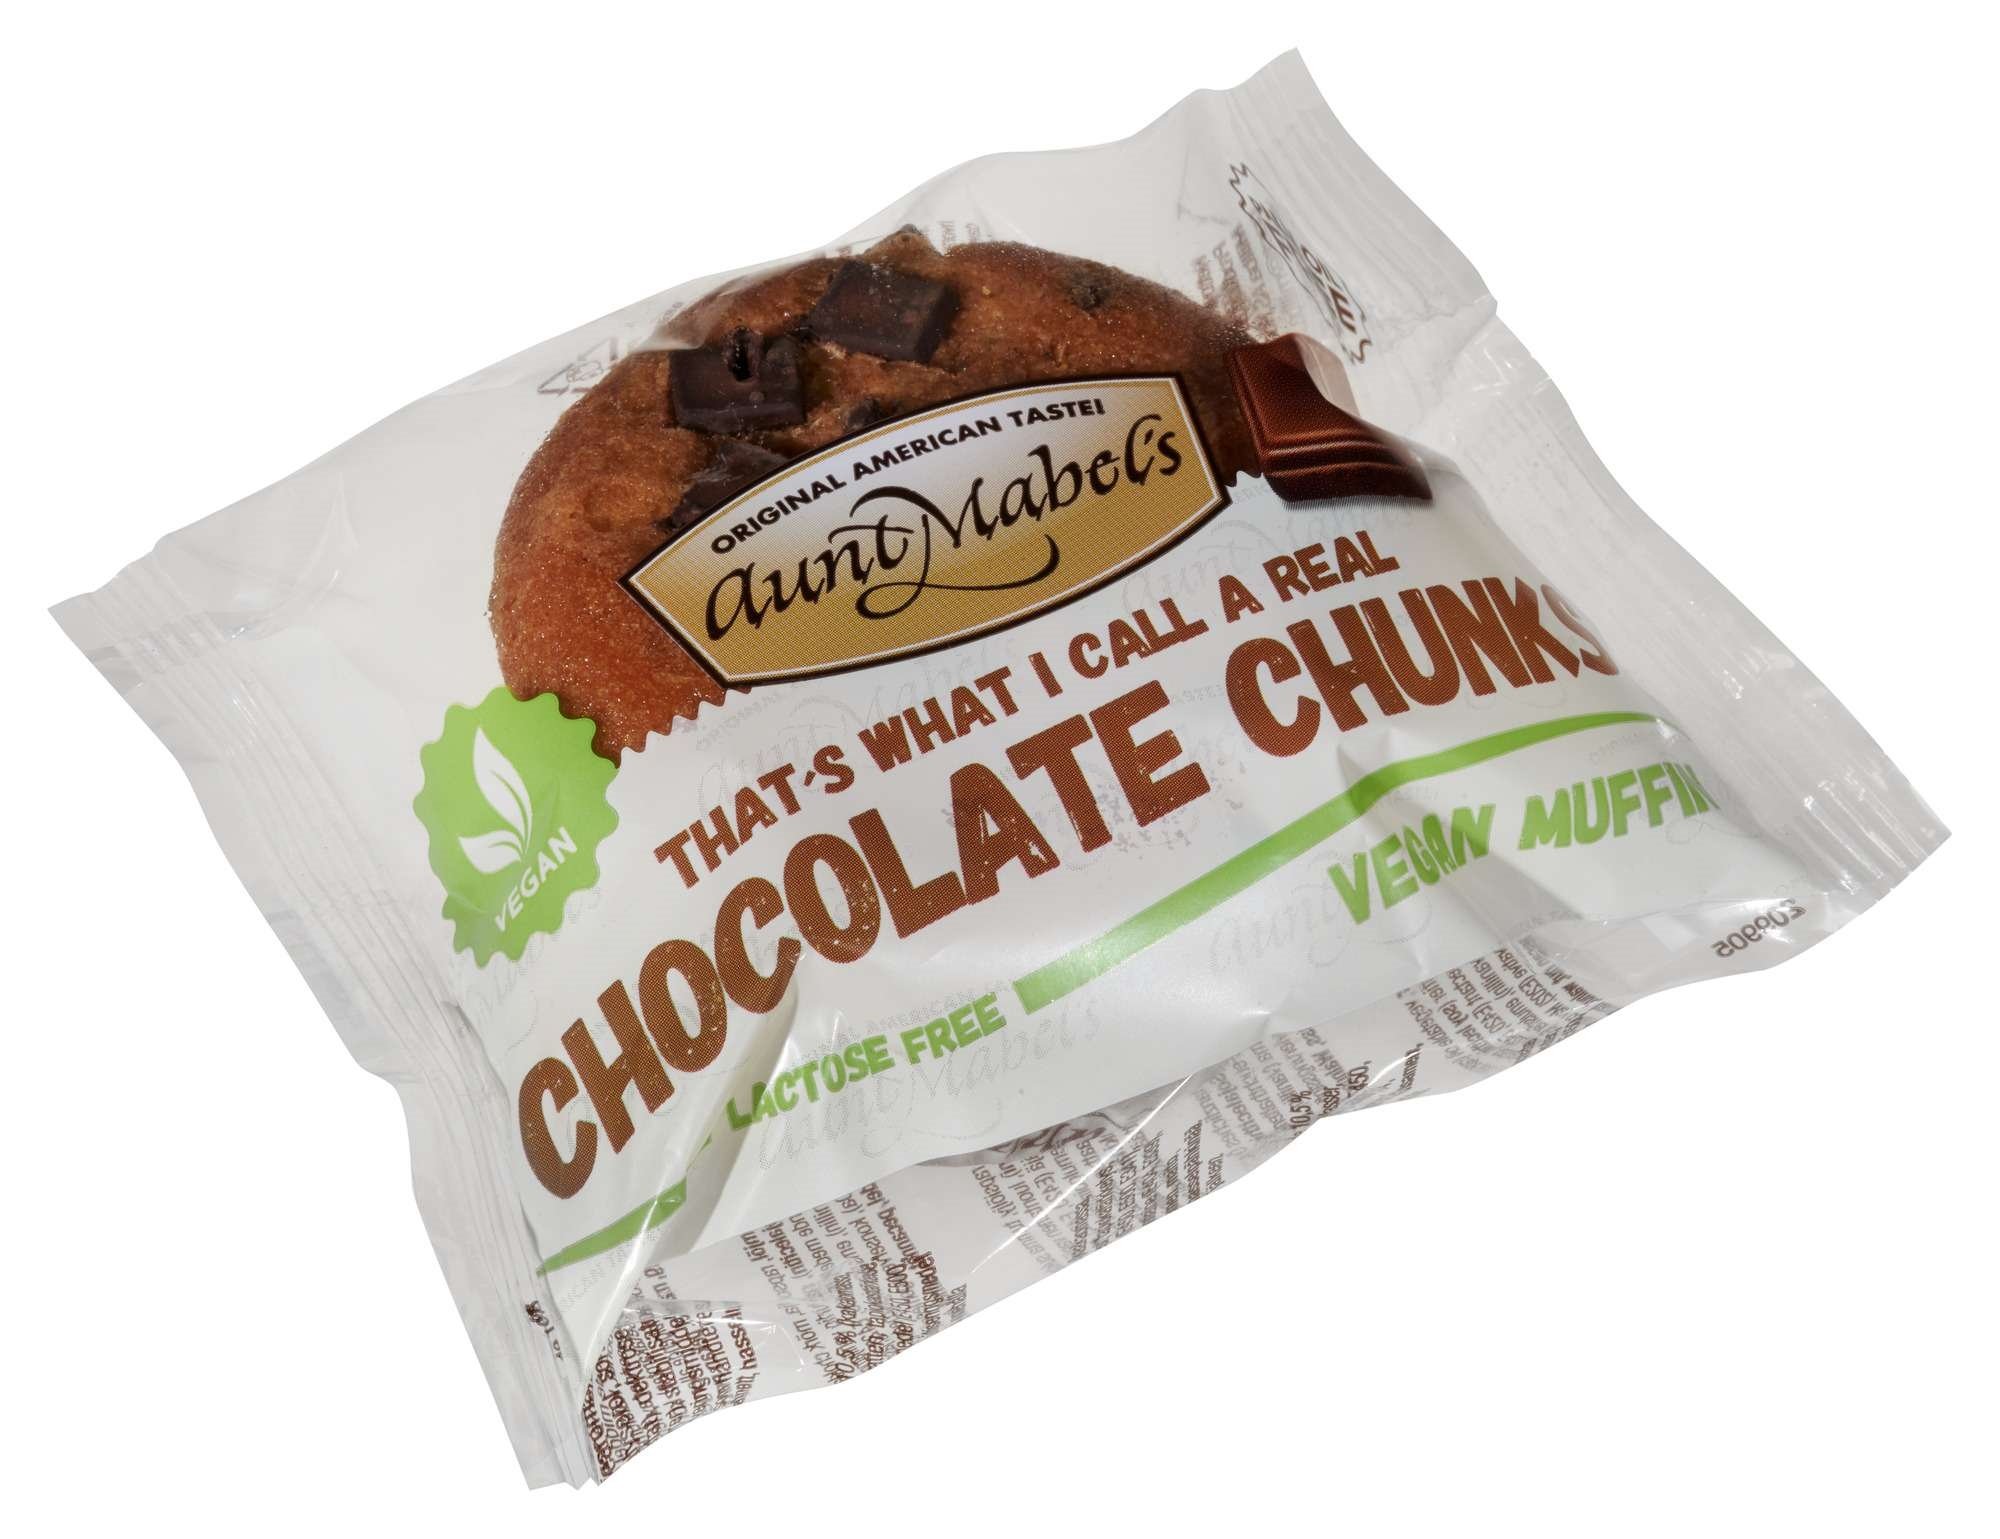 Muffins chocolate chunks vegan 100g